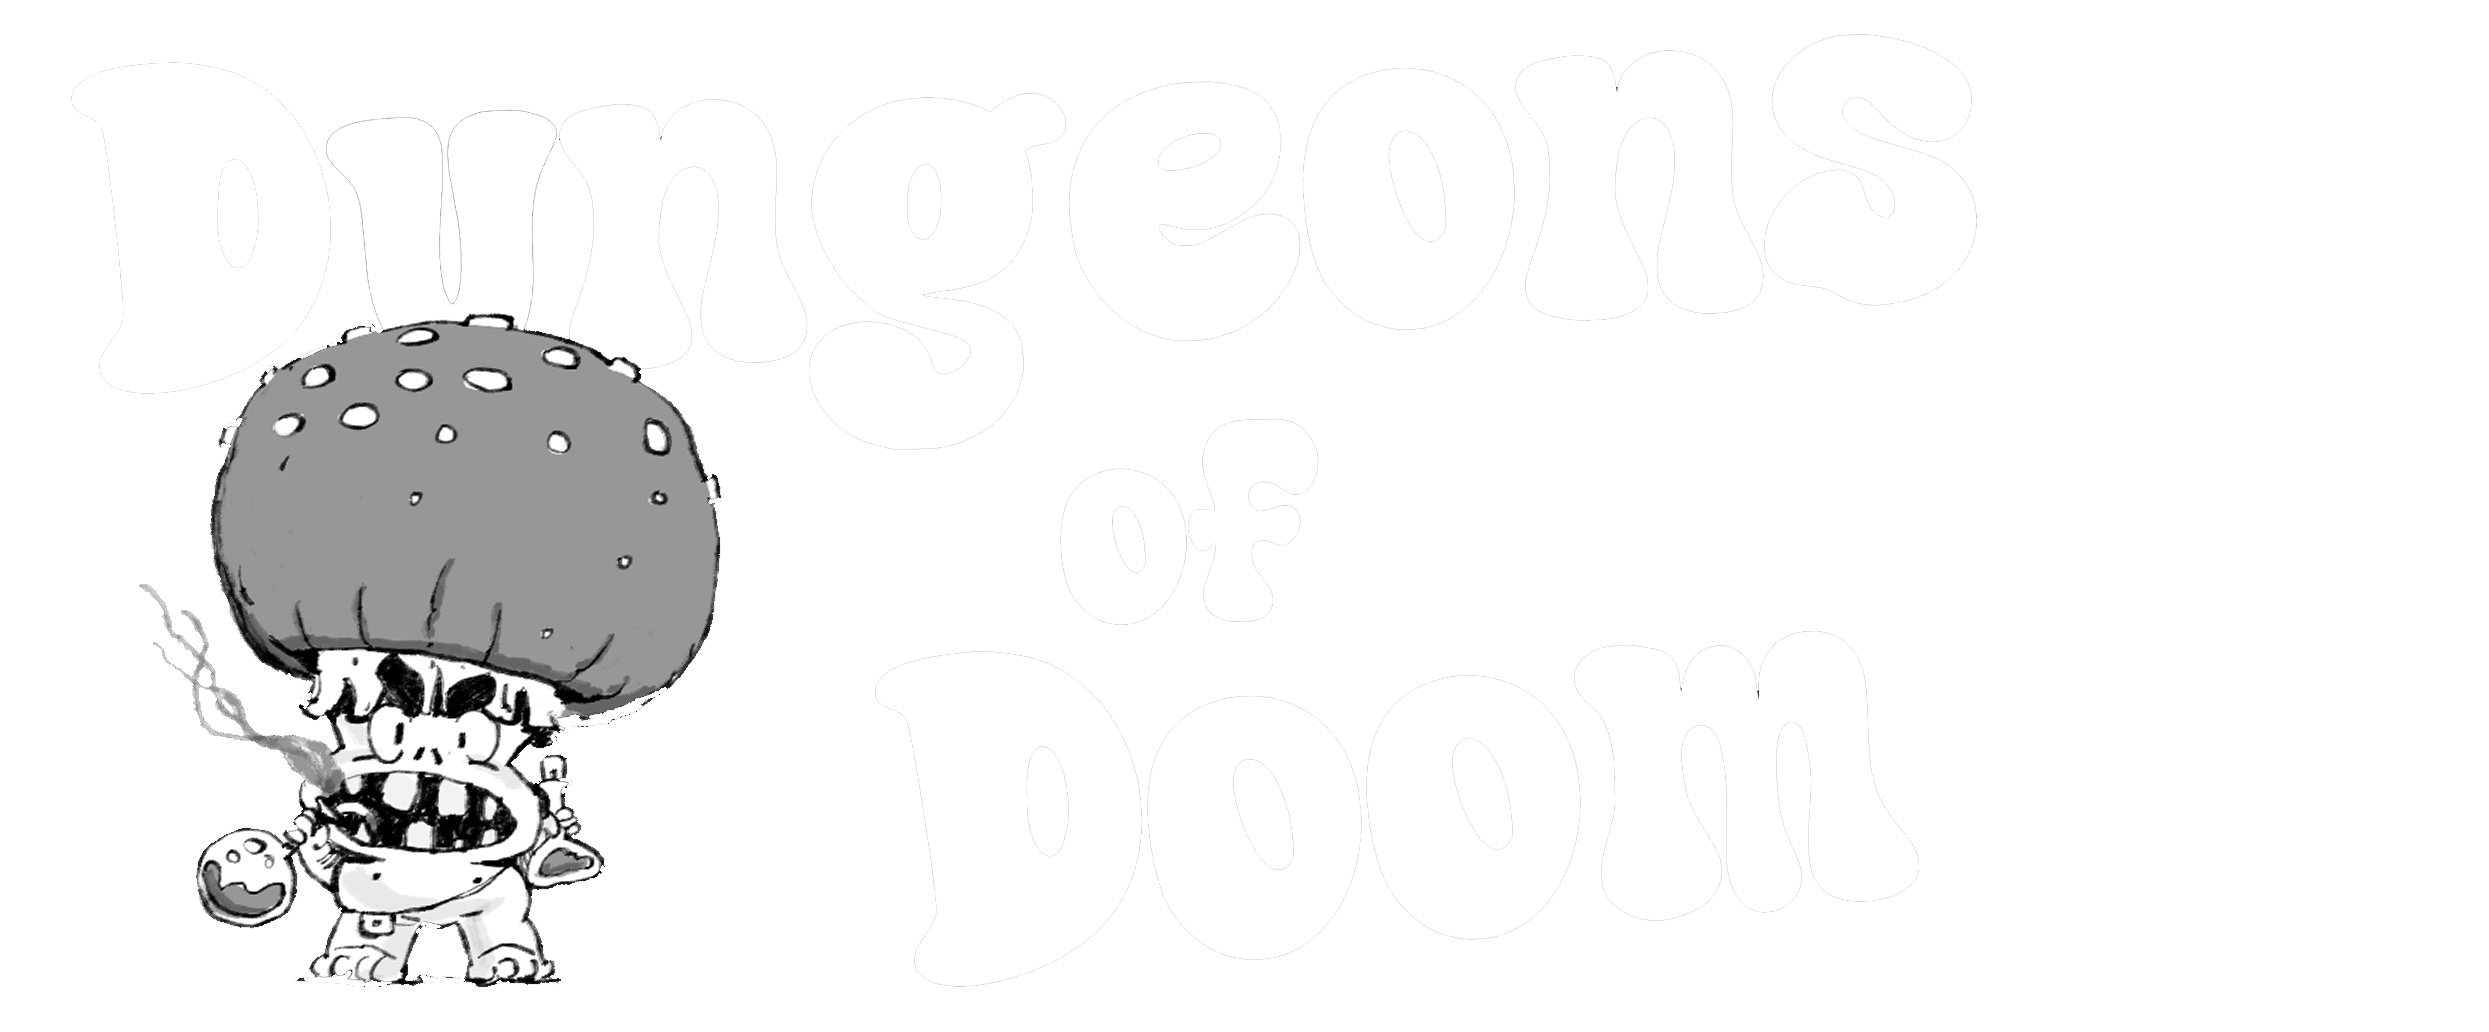 Dungeons of Doom